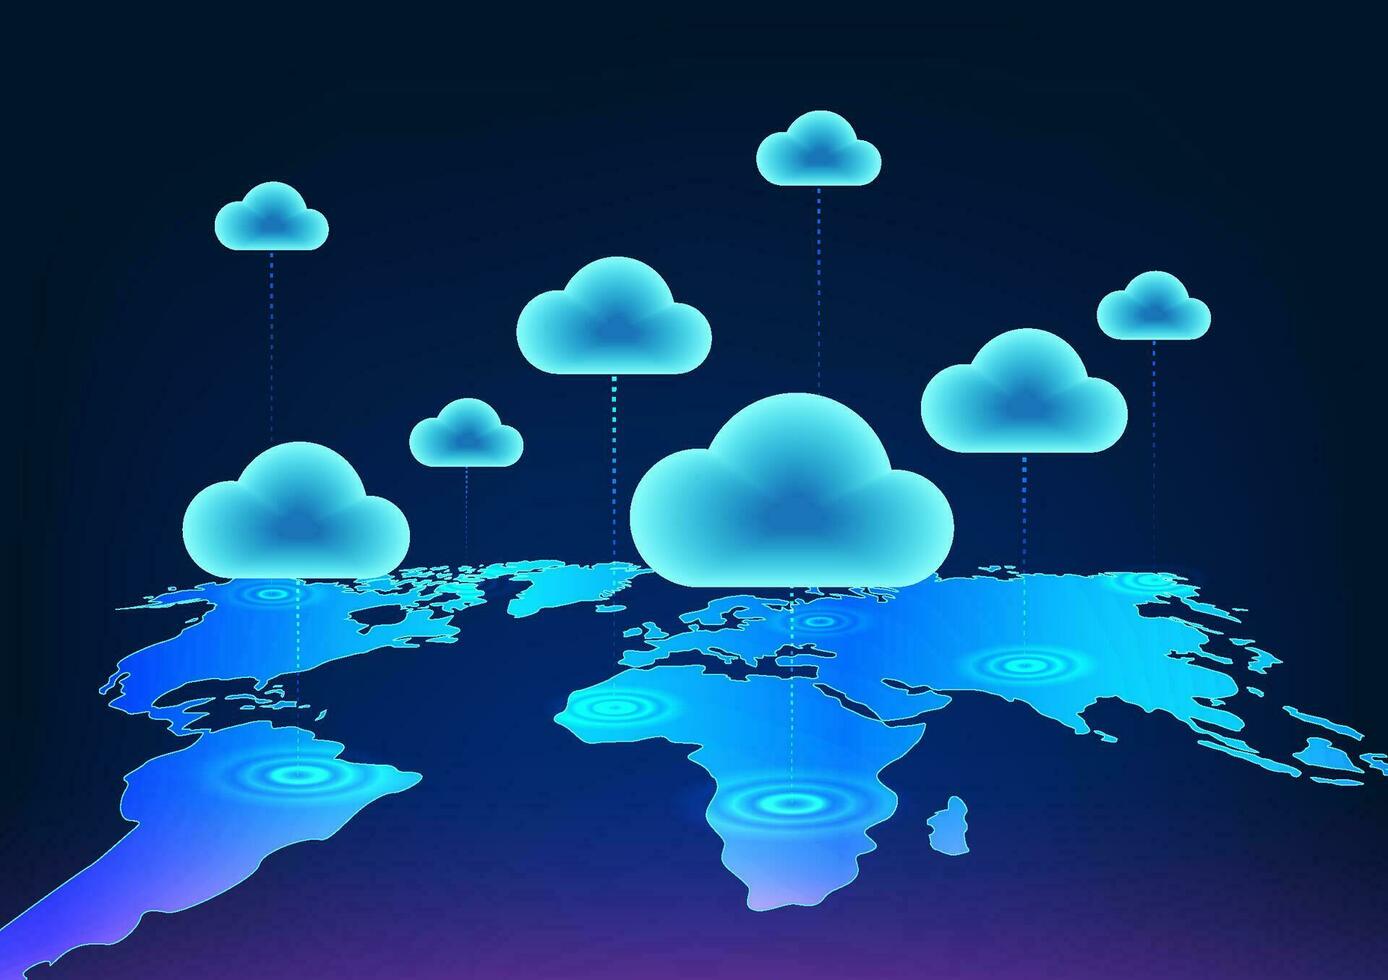 wolk technologie is een technologie voor opslaan gegevens over- een beveiligen internet netwerk. het is ook een technologie voor overbrengen informatie naar andere mensen in de omgeving van de wereld. gebruik makend van een wolk net zo een icoon vector